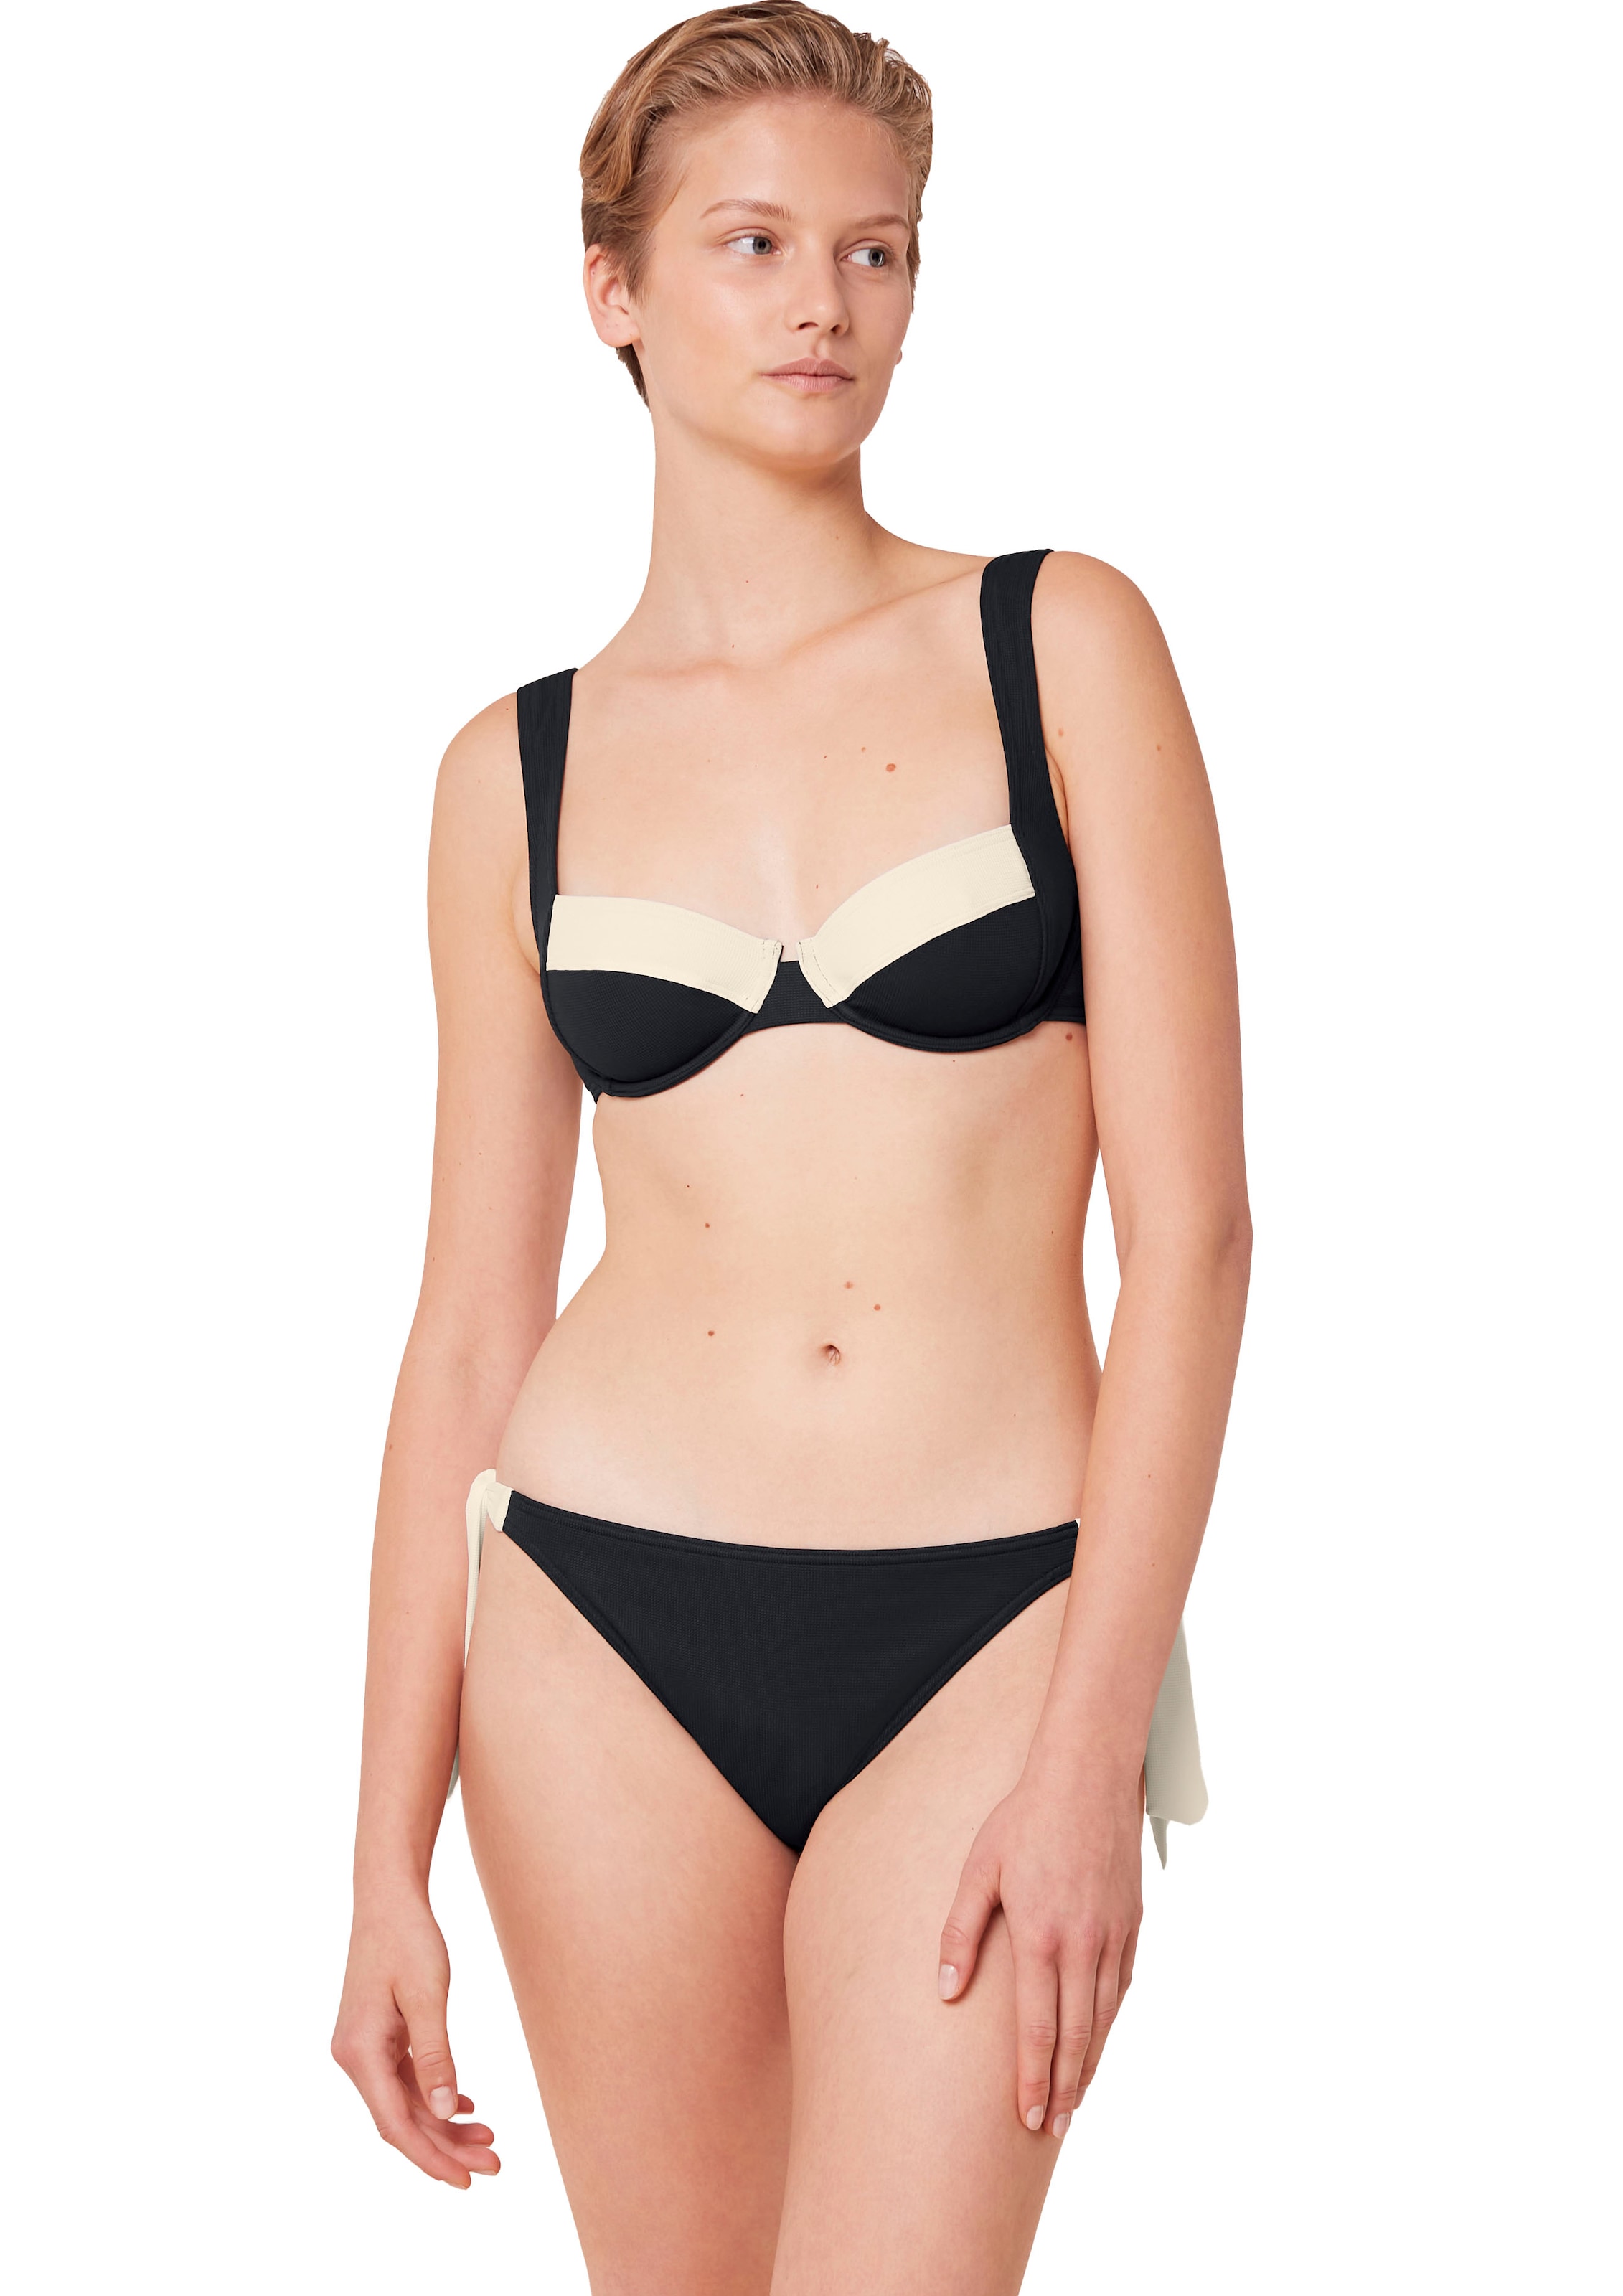 Triumph Balconette-Bikini-Top "Summer Glow W 02 sd", Struktur-Piqué mit schmeichelhaft geschnittenem Dekolleté, zweifarb